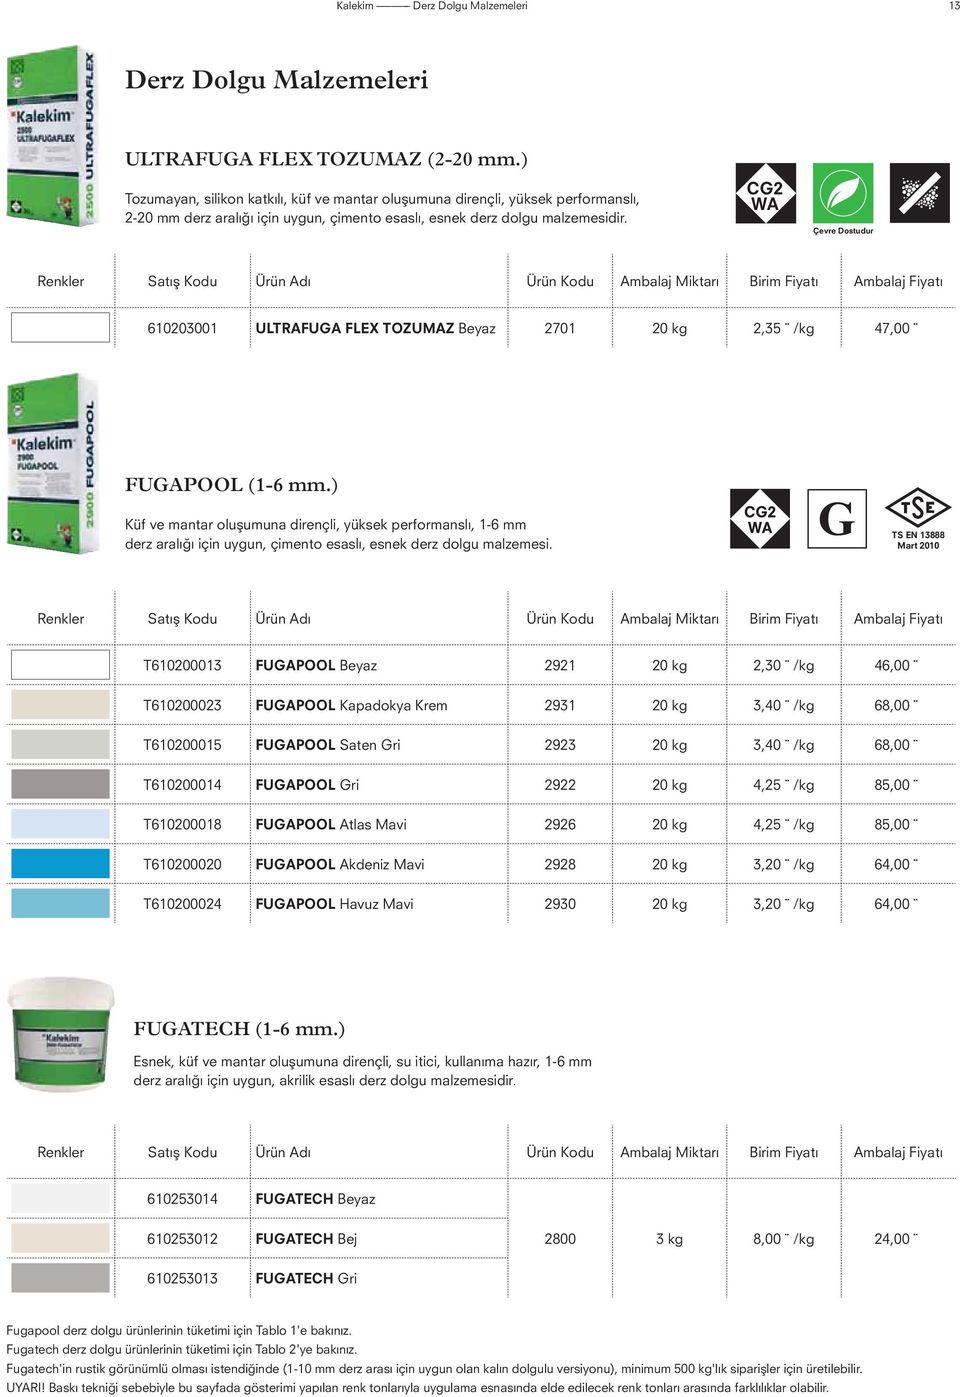 CG2 WA Çevre Dostudur Renkler Satış Kodu Ürün Adı Ürün Kodu Miktarı Birim Fiyatı Fiyatı 610203001 ULTRAFUGA FLEX TOZUMAZ Beyaz 2701 20 kg 2,35 /kg 47,00 FUGAPOOL (1-6 mm.